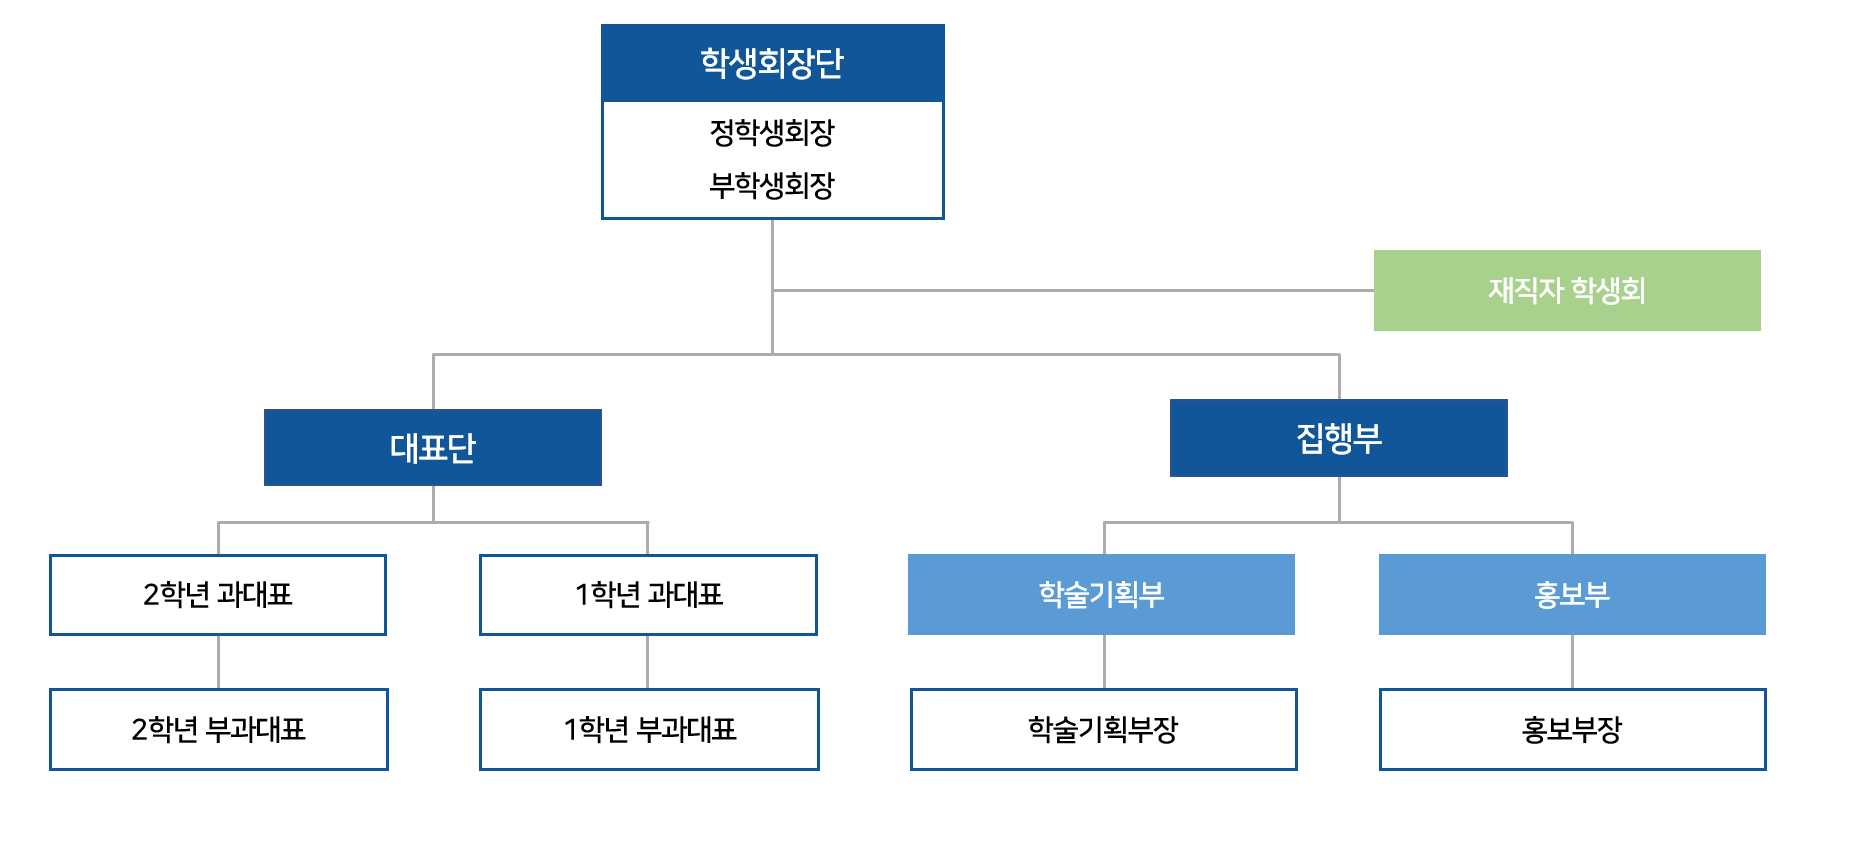 문헌정보학과 학생회 조직도